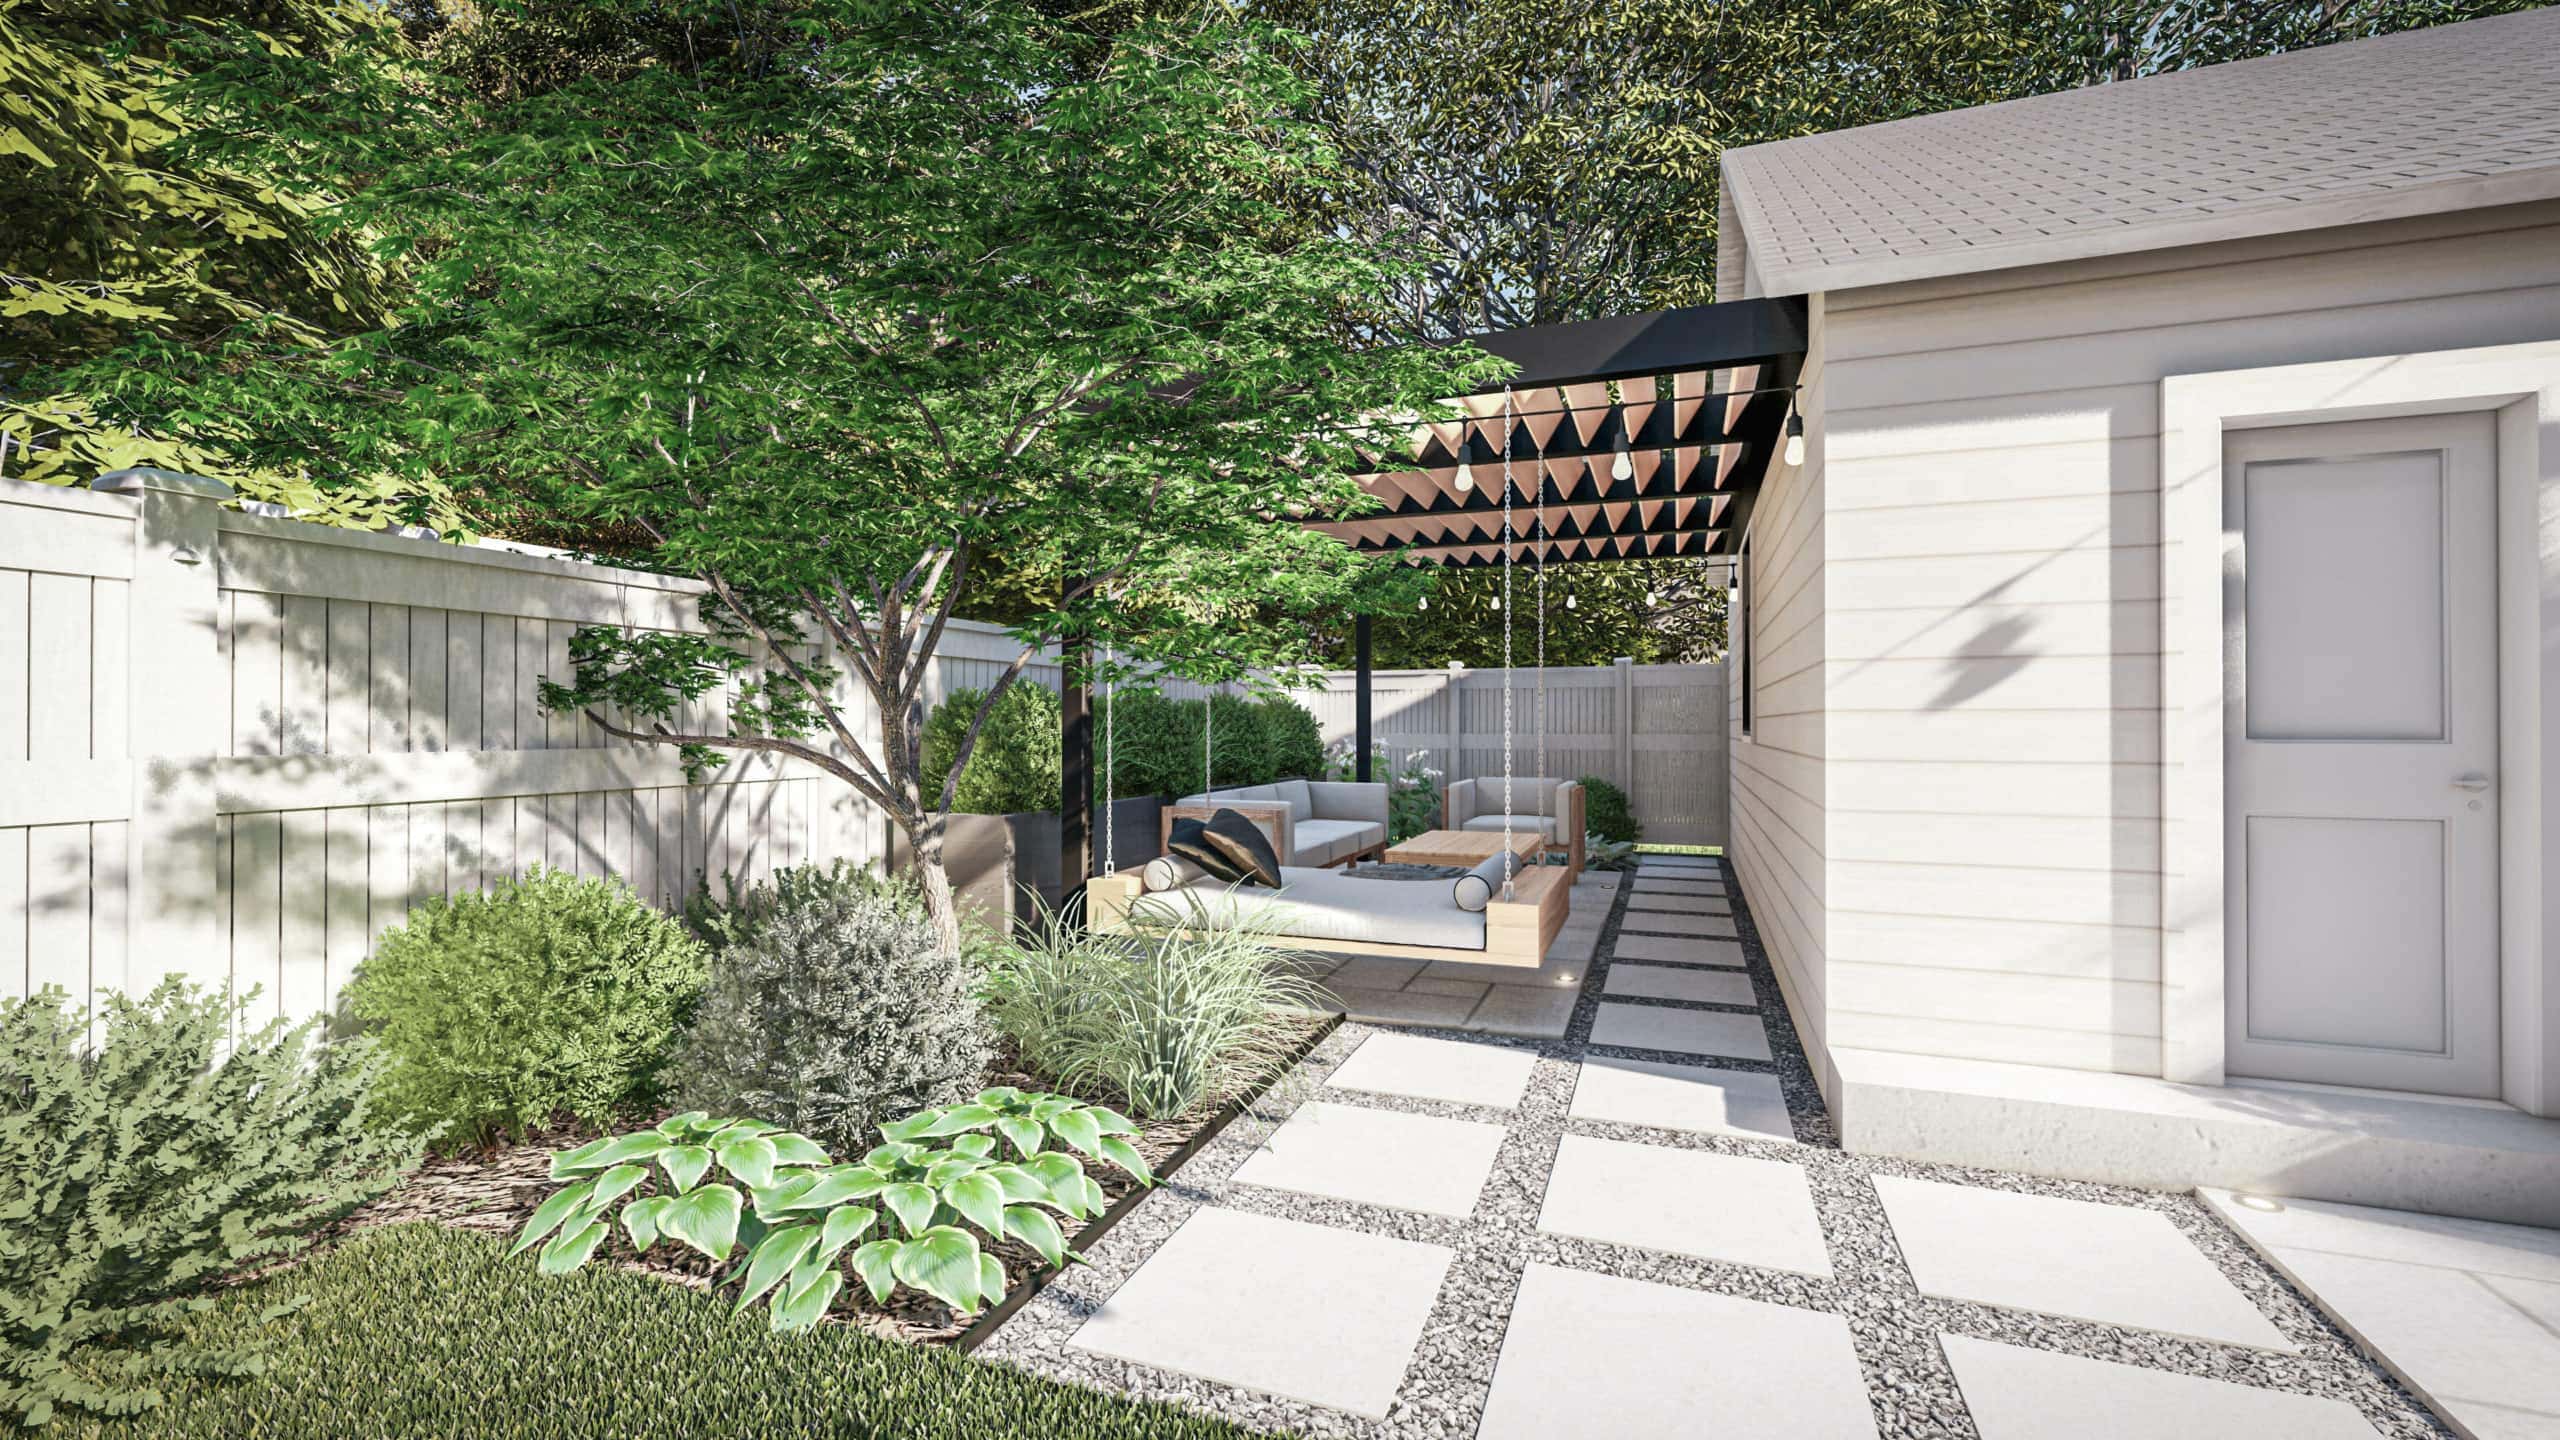 Our Yardzen backyard design plan